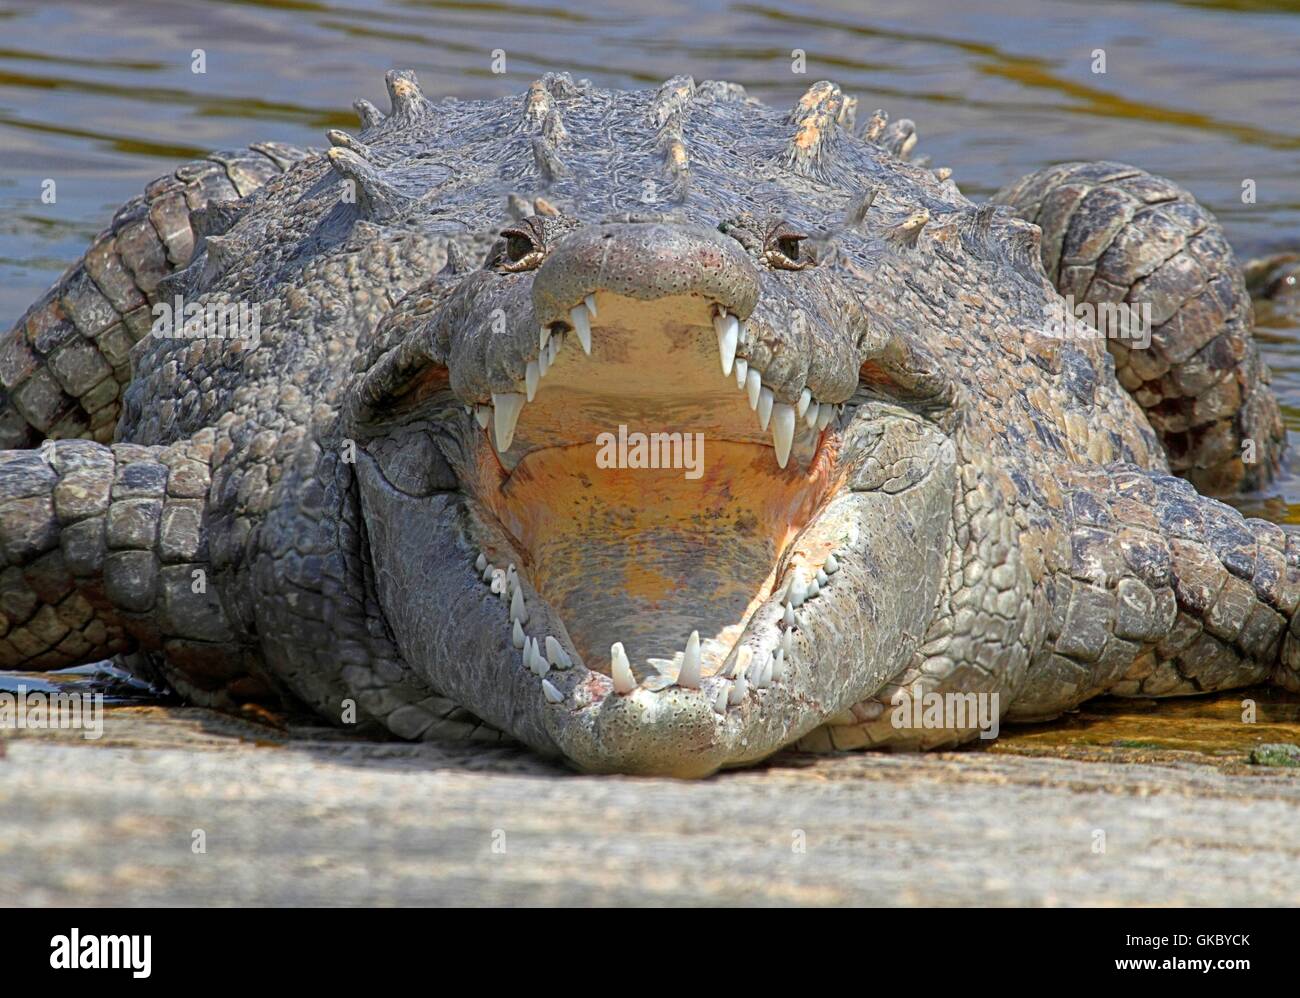 reptile wild crocodile Stock Photo